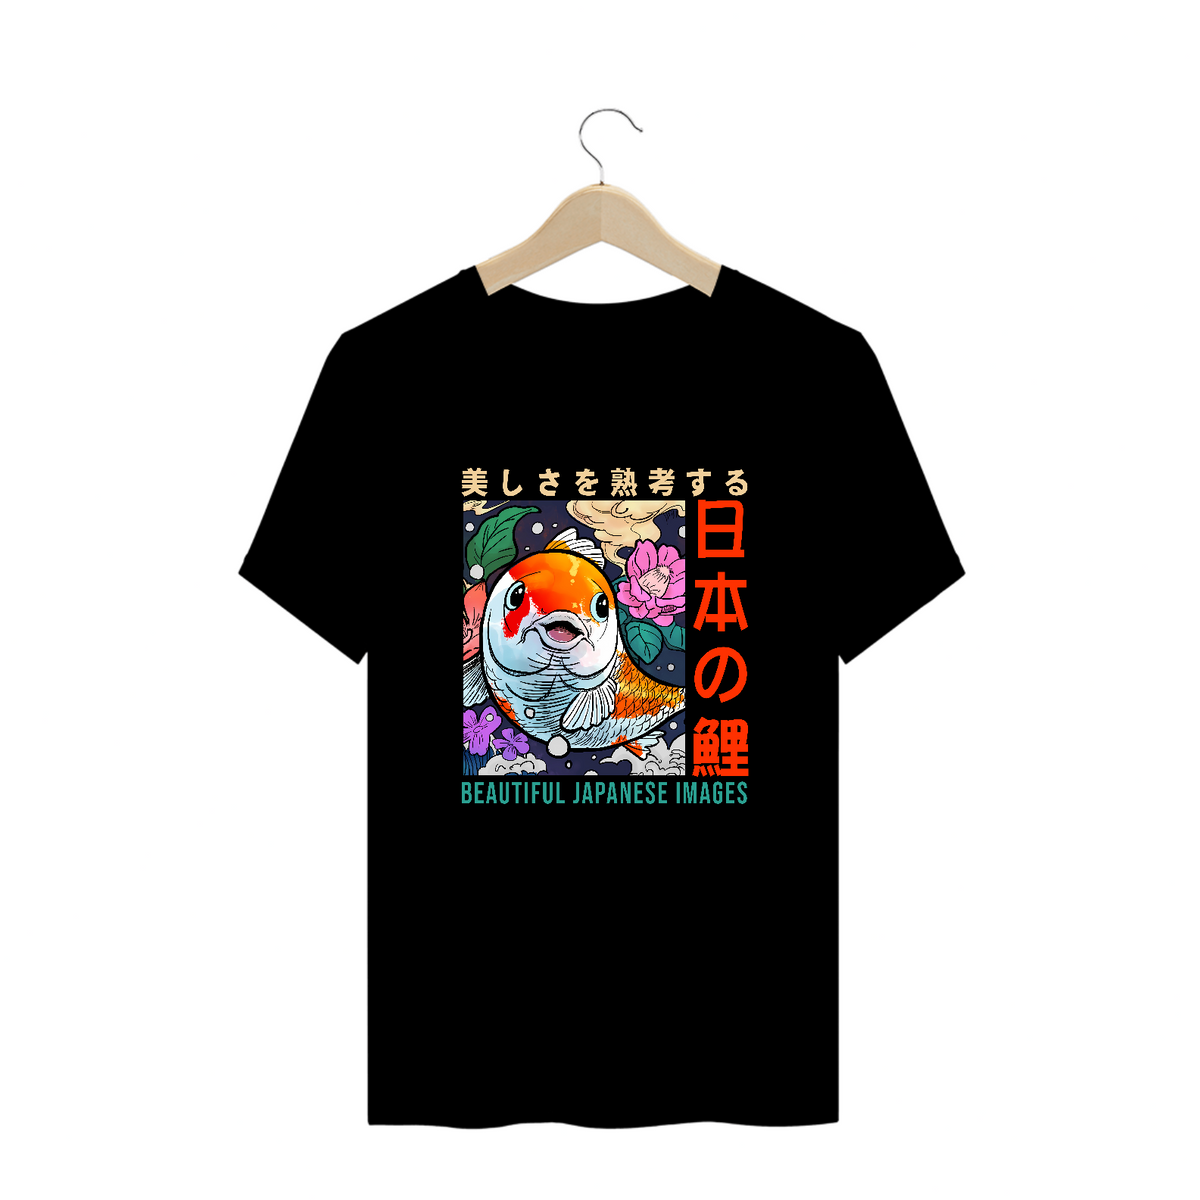 Nome do produto: Camiseta Plus Size: “Japanese KOI”